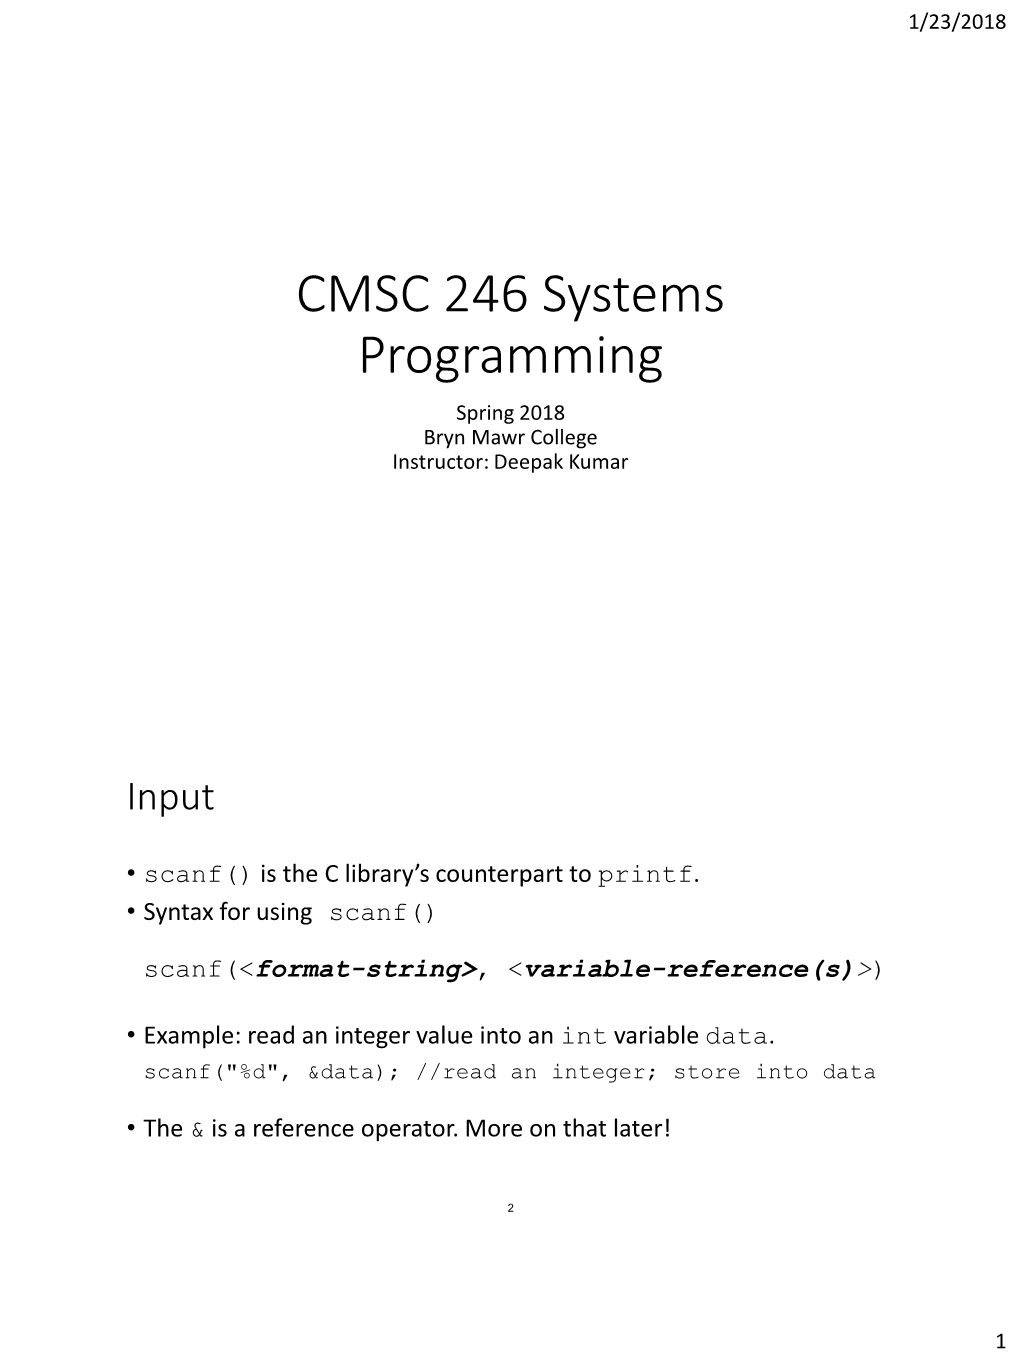 CMSC 246 Systems Programming Spring 2018 Bryn Mawr College Instructor: Deepak Kumar